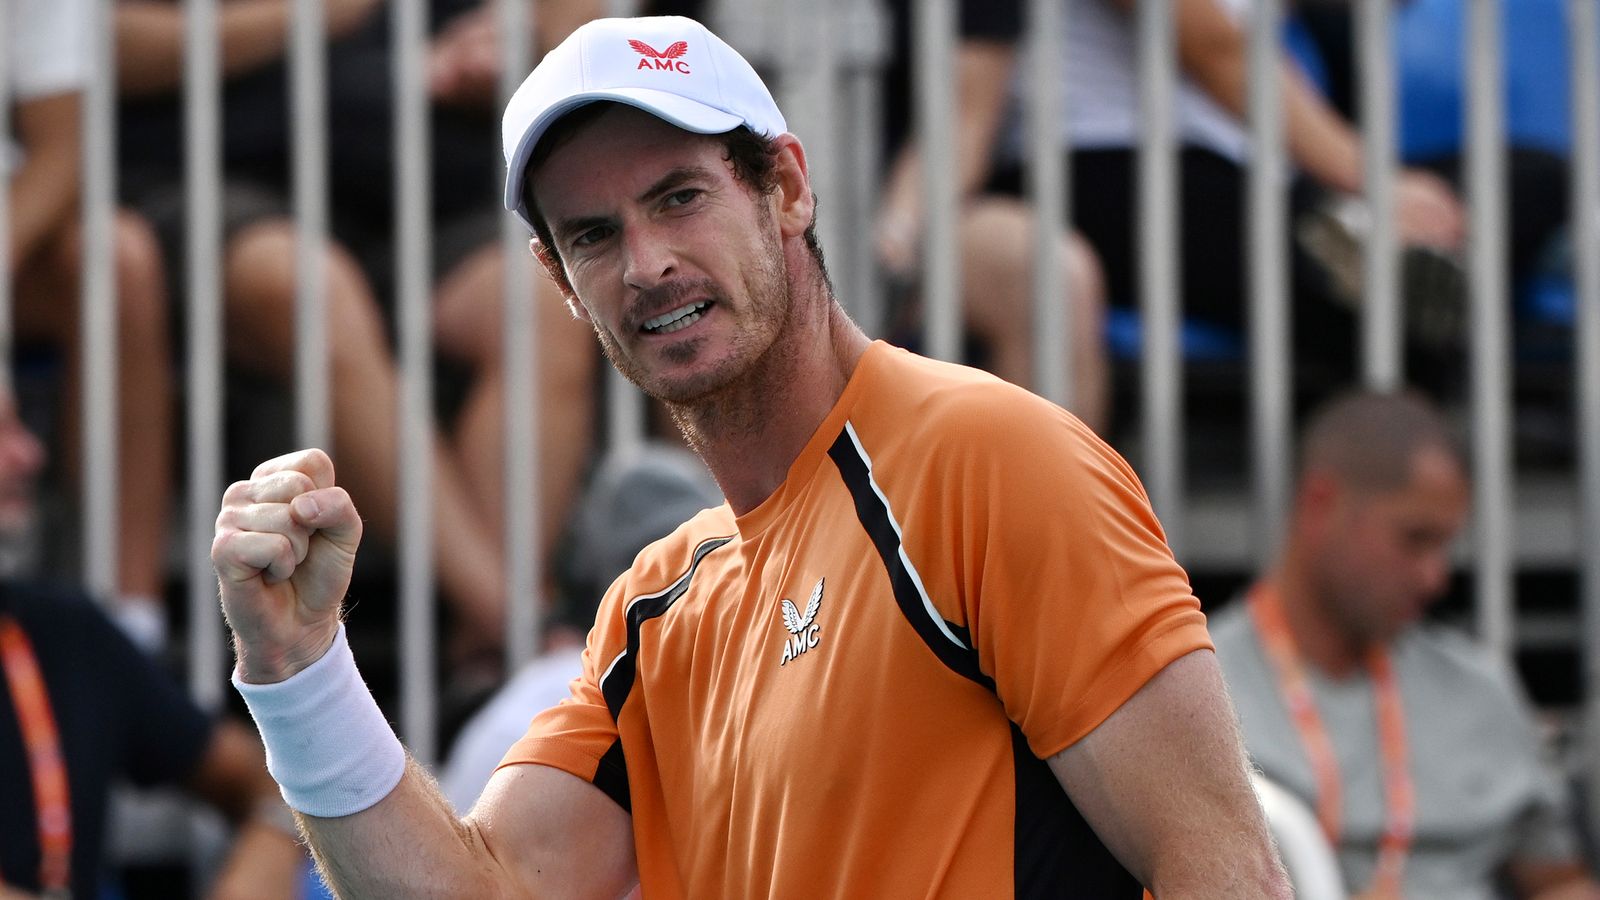 Andy Murray no requiere cirugía en el tobillo lesionado pero la fecha de regreso aún está por confirmar |  Noticias de tenis